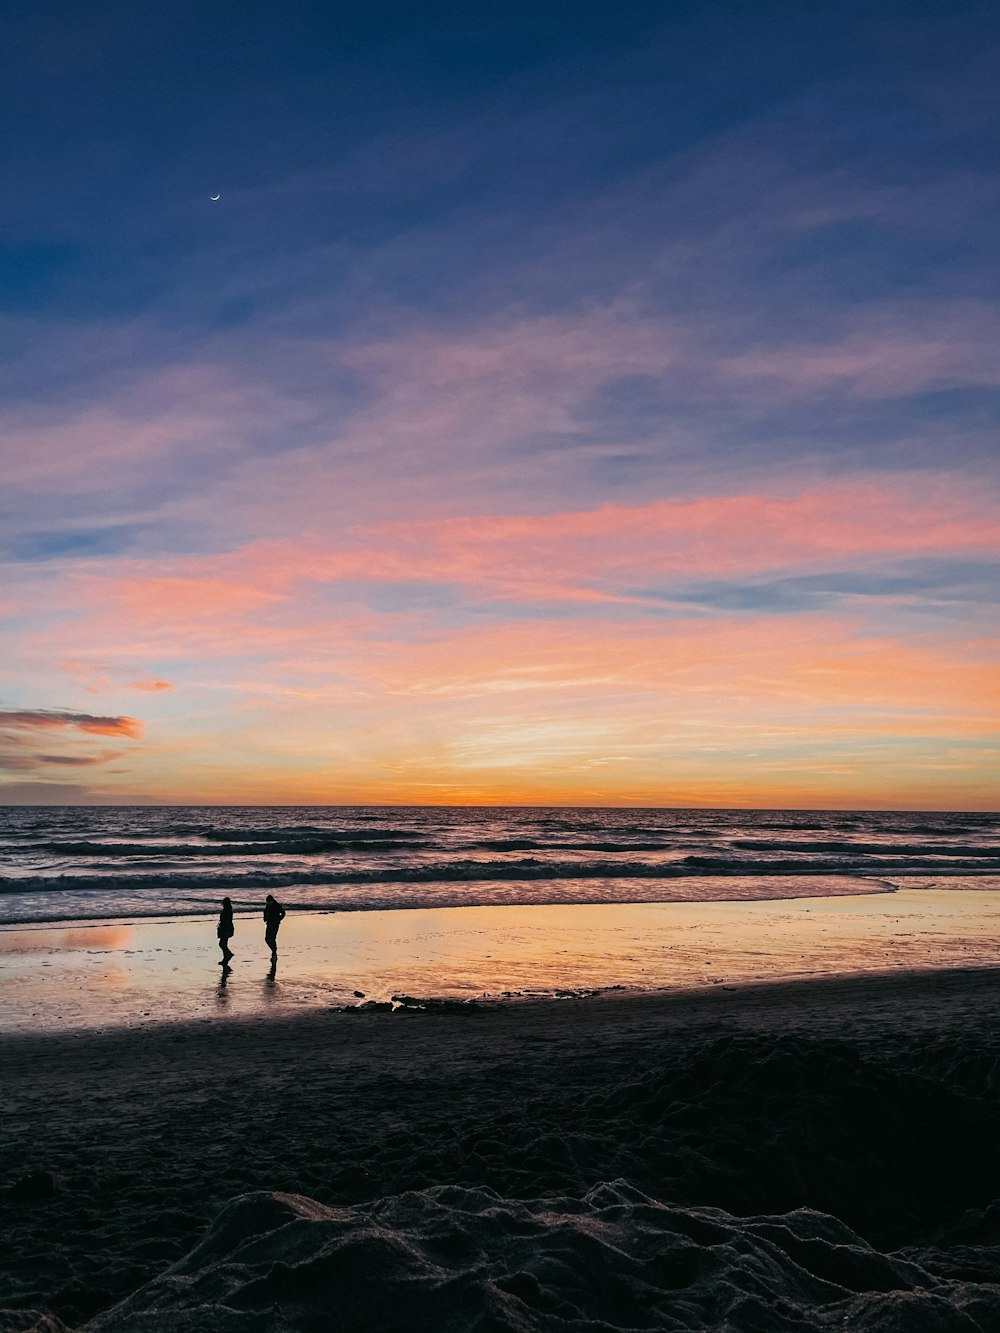 Silueta de 2 personas caminando en la playa durante la puesta del sol